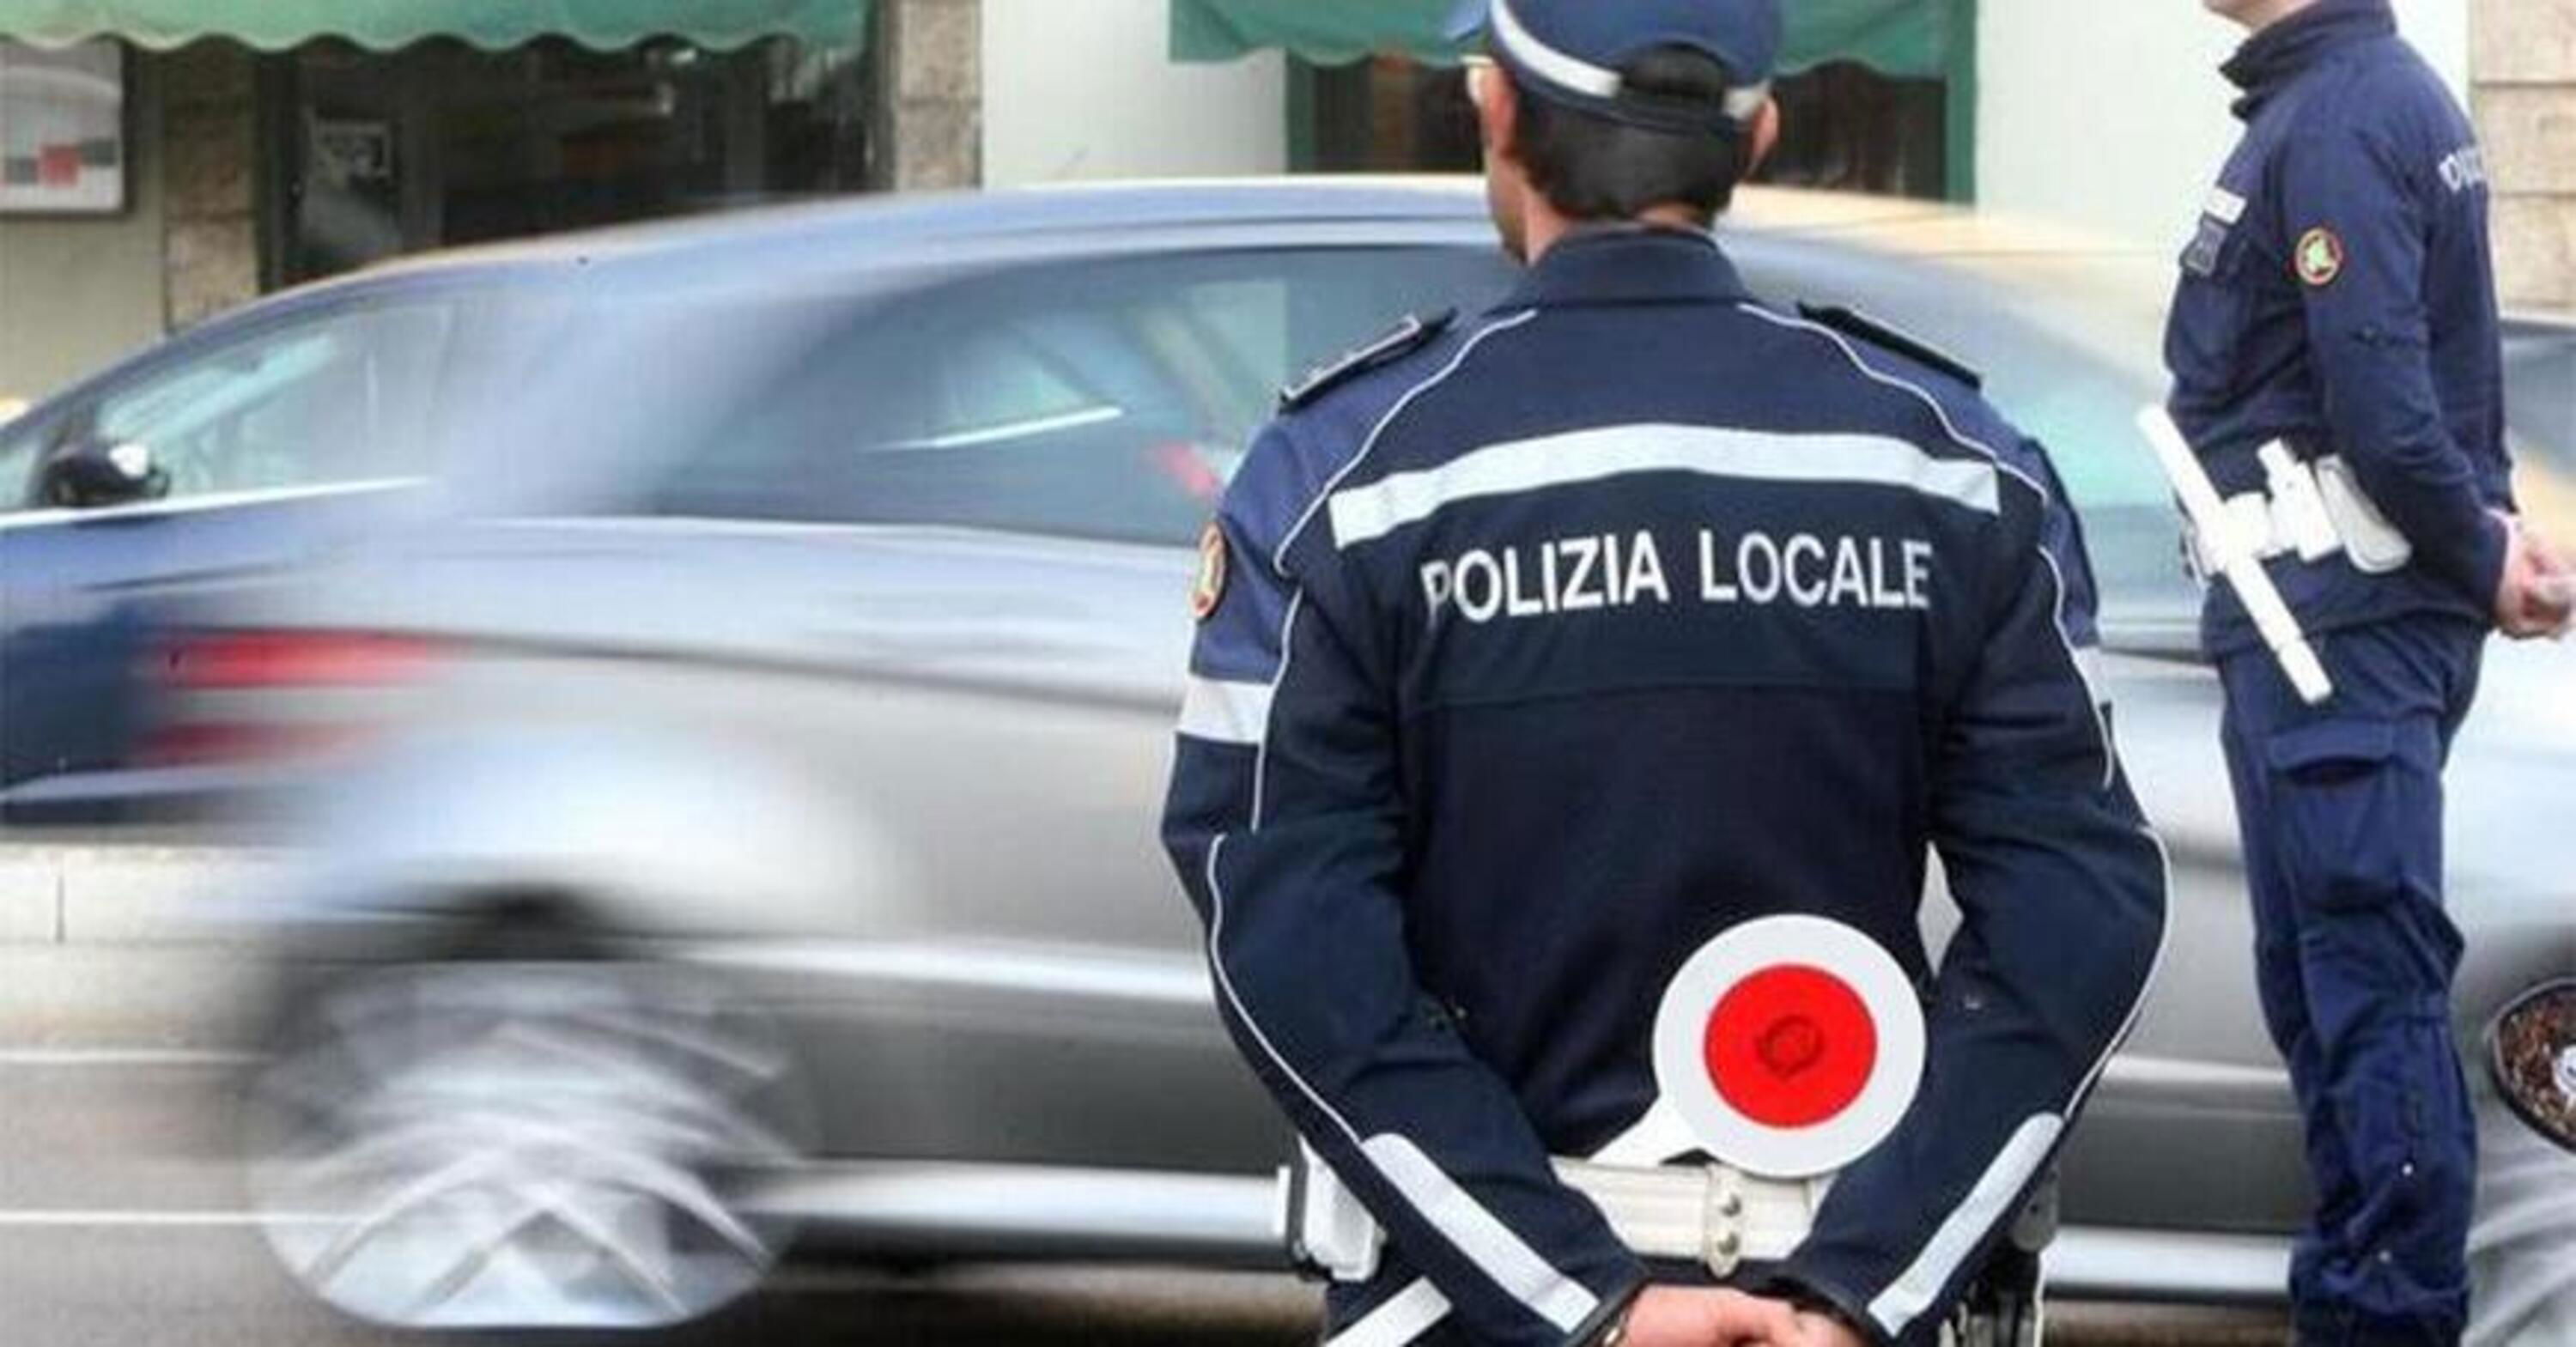 Firenze: gli falsificano la targa della moto e piovono multe a casa, scoperti truffatori